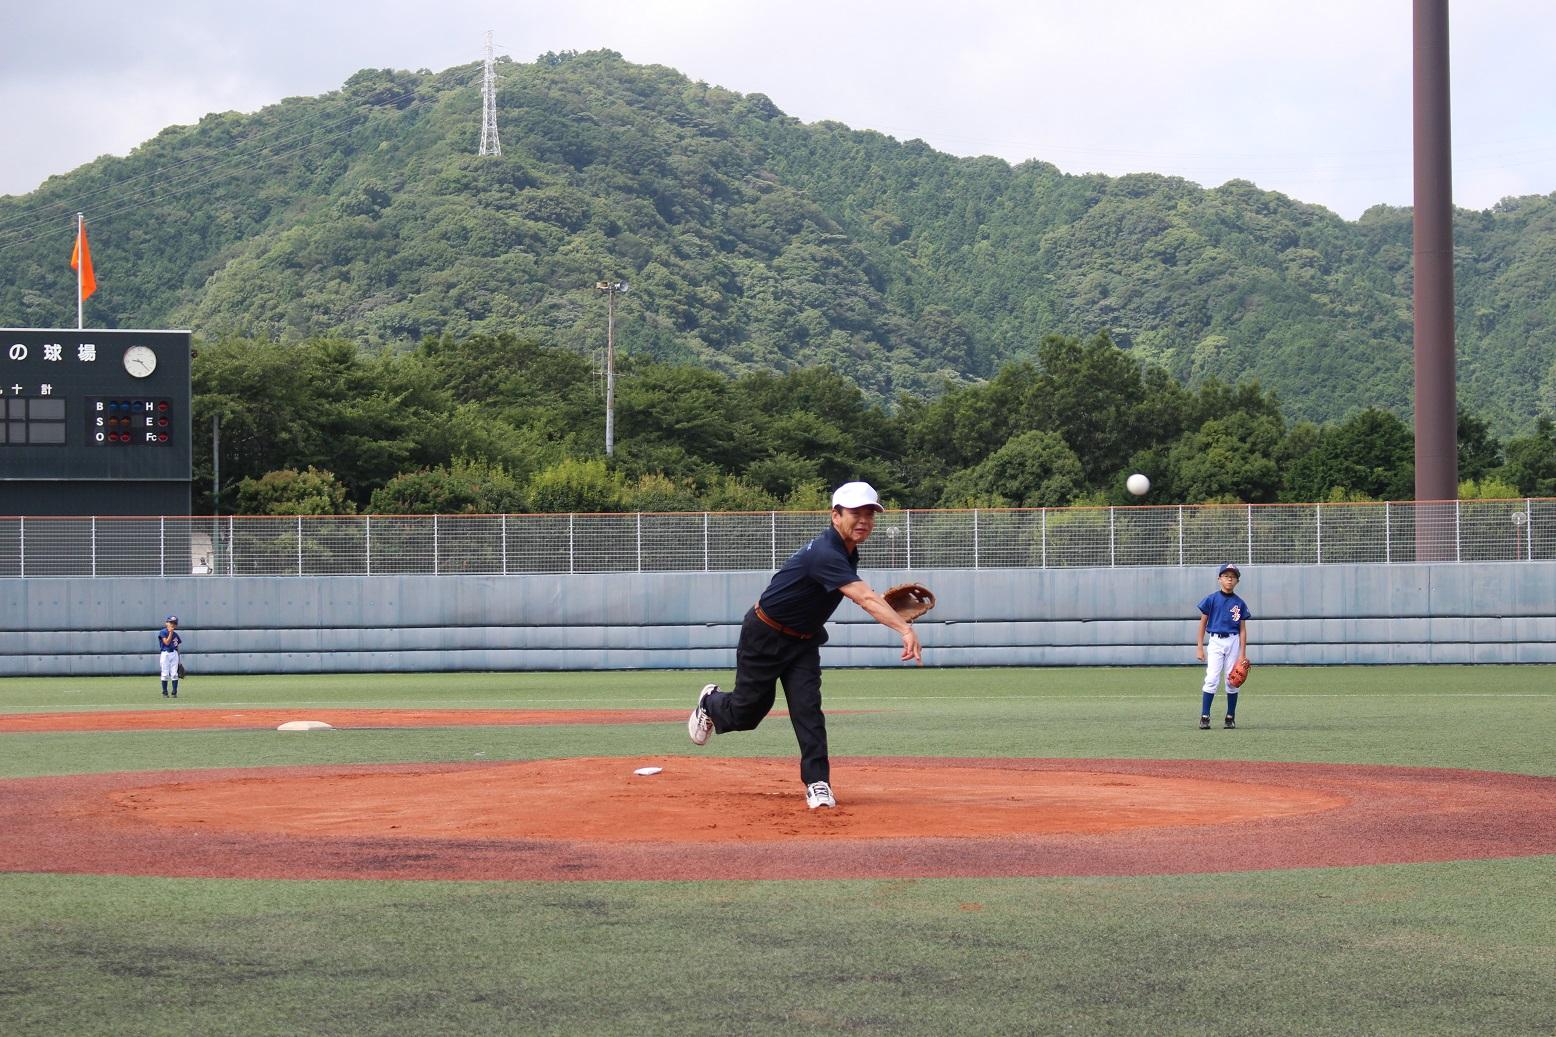 「オール伊豆少年野球学童大会」の開会式で始球式を行う伊東市長の写真